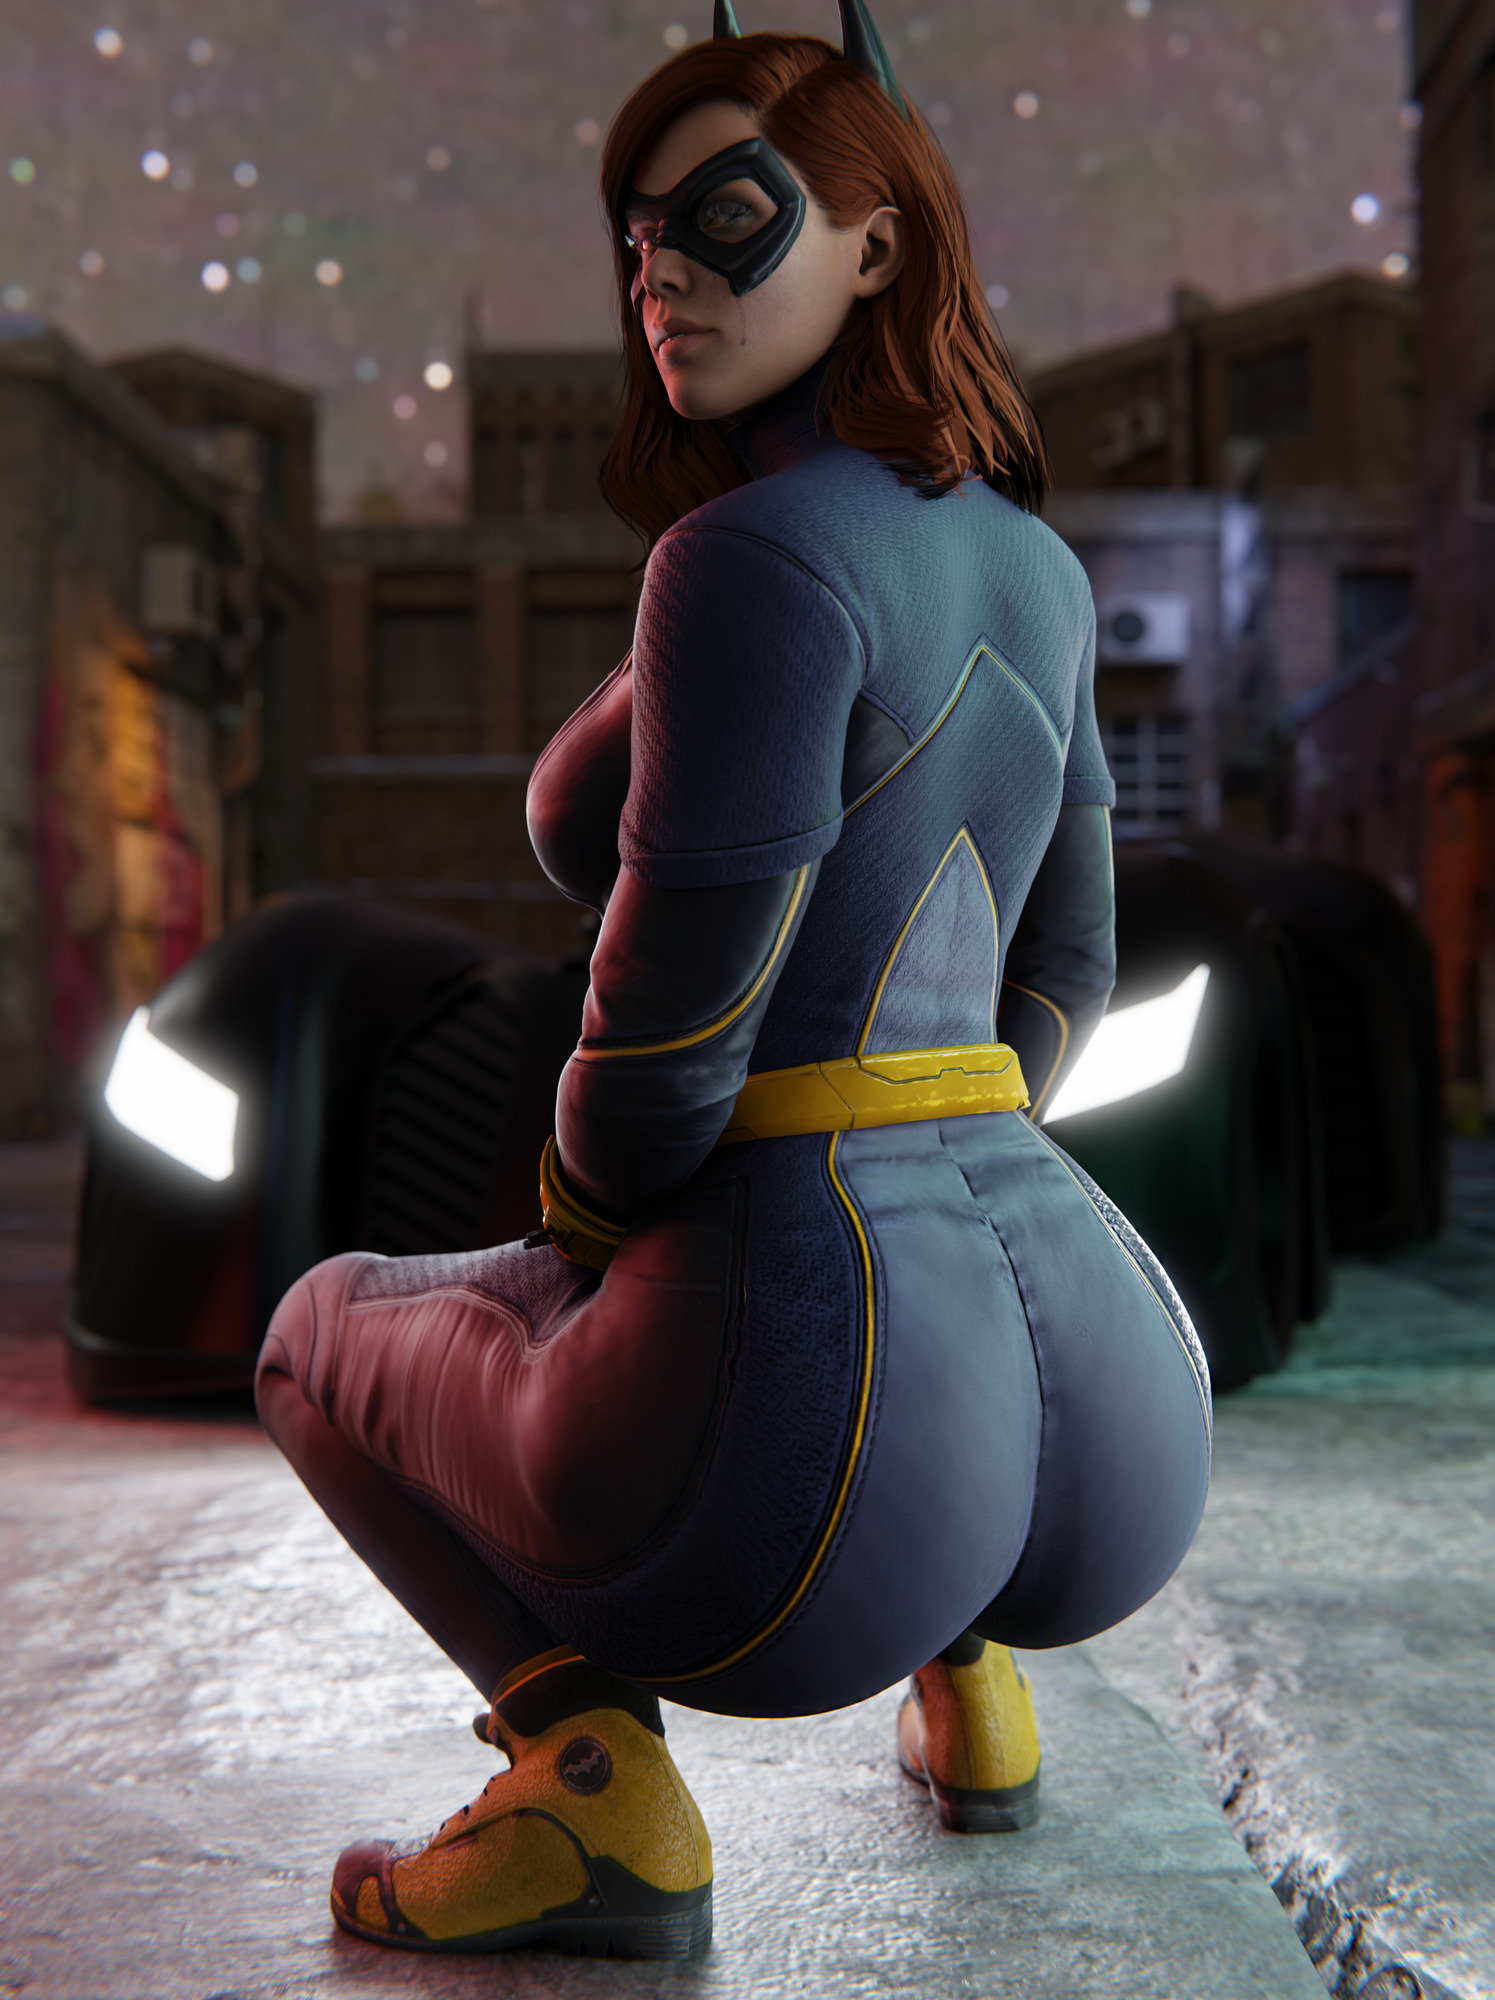 Gotham knights batgirl porn